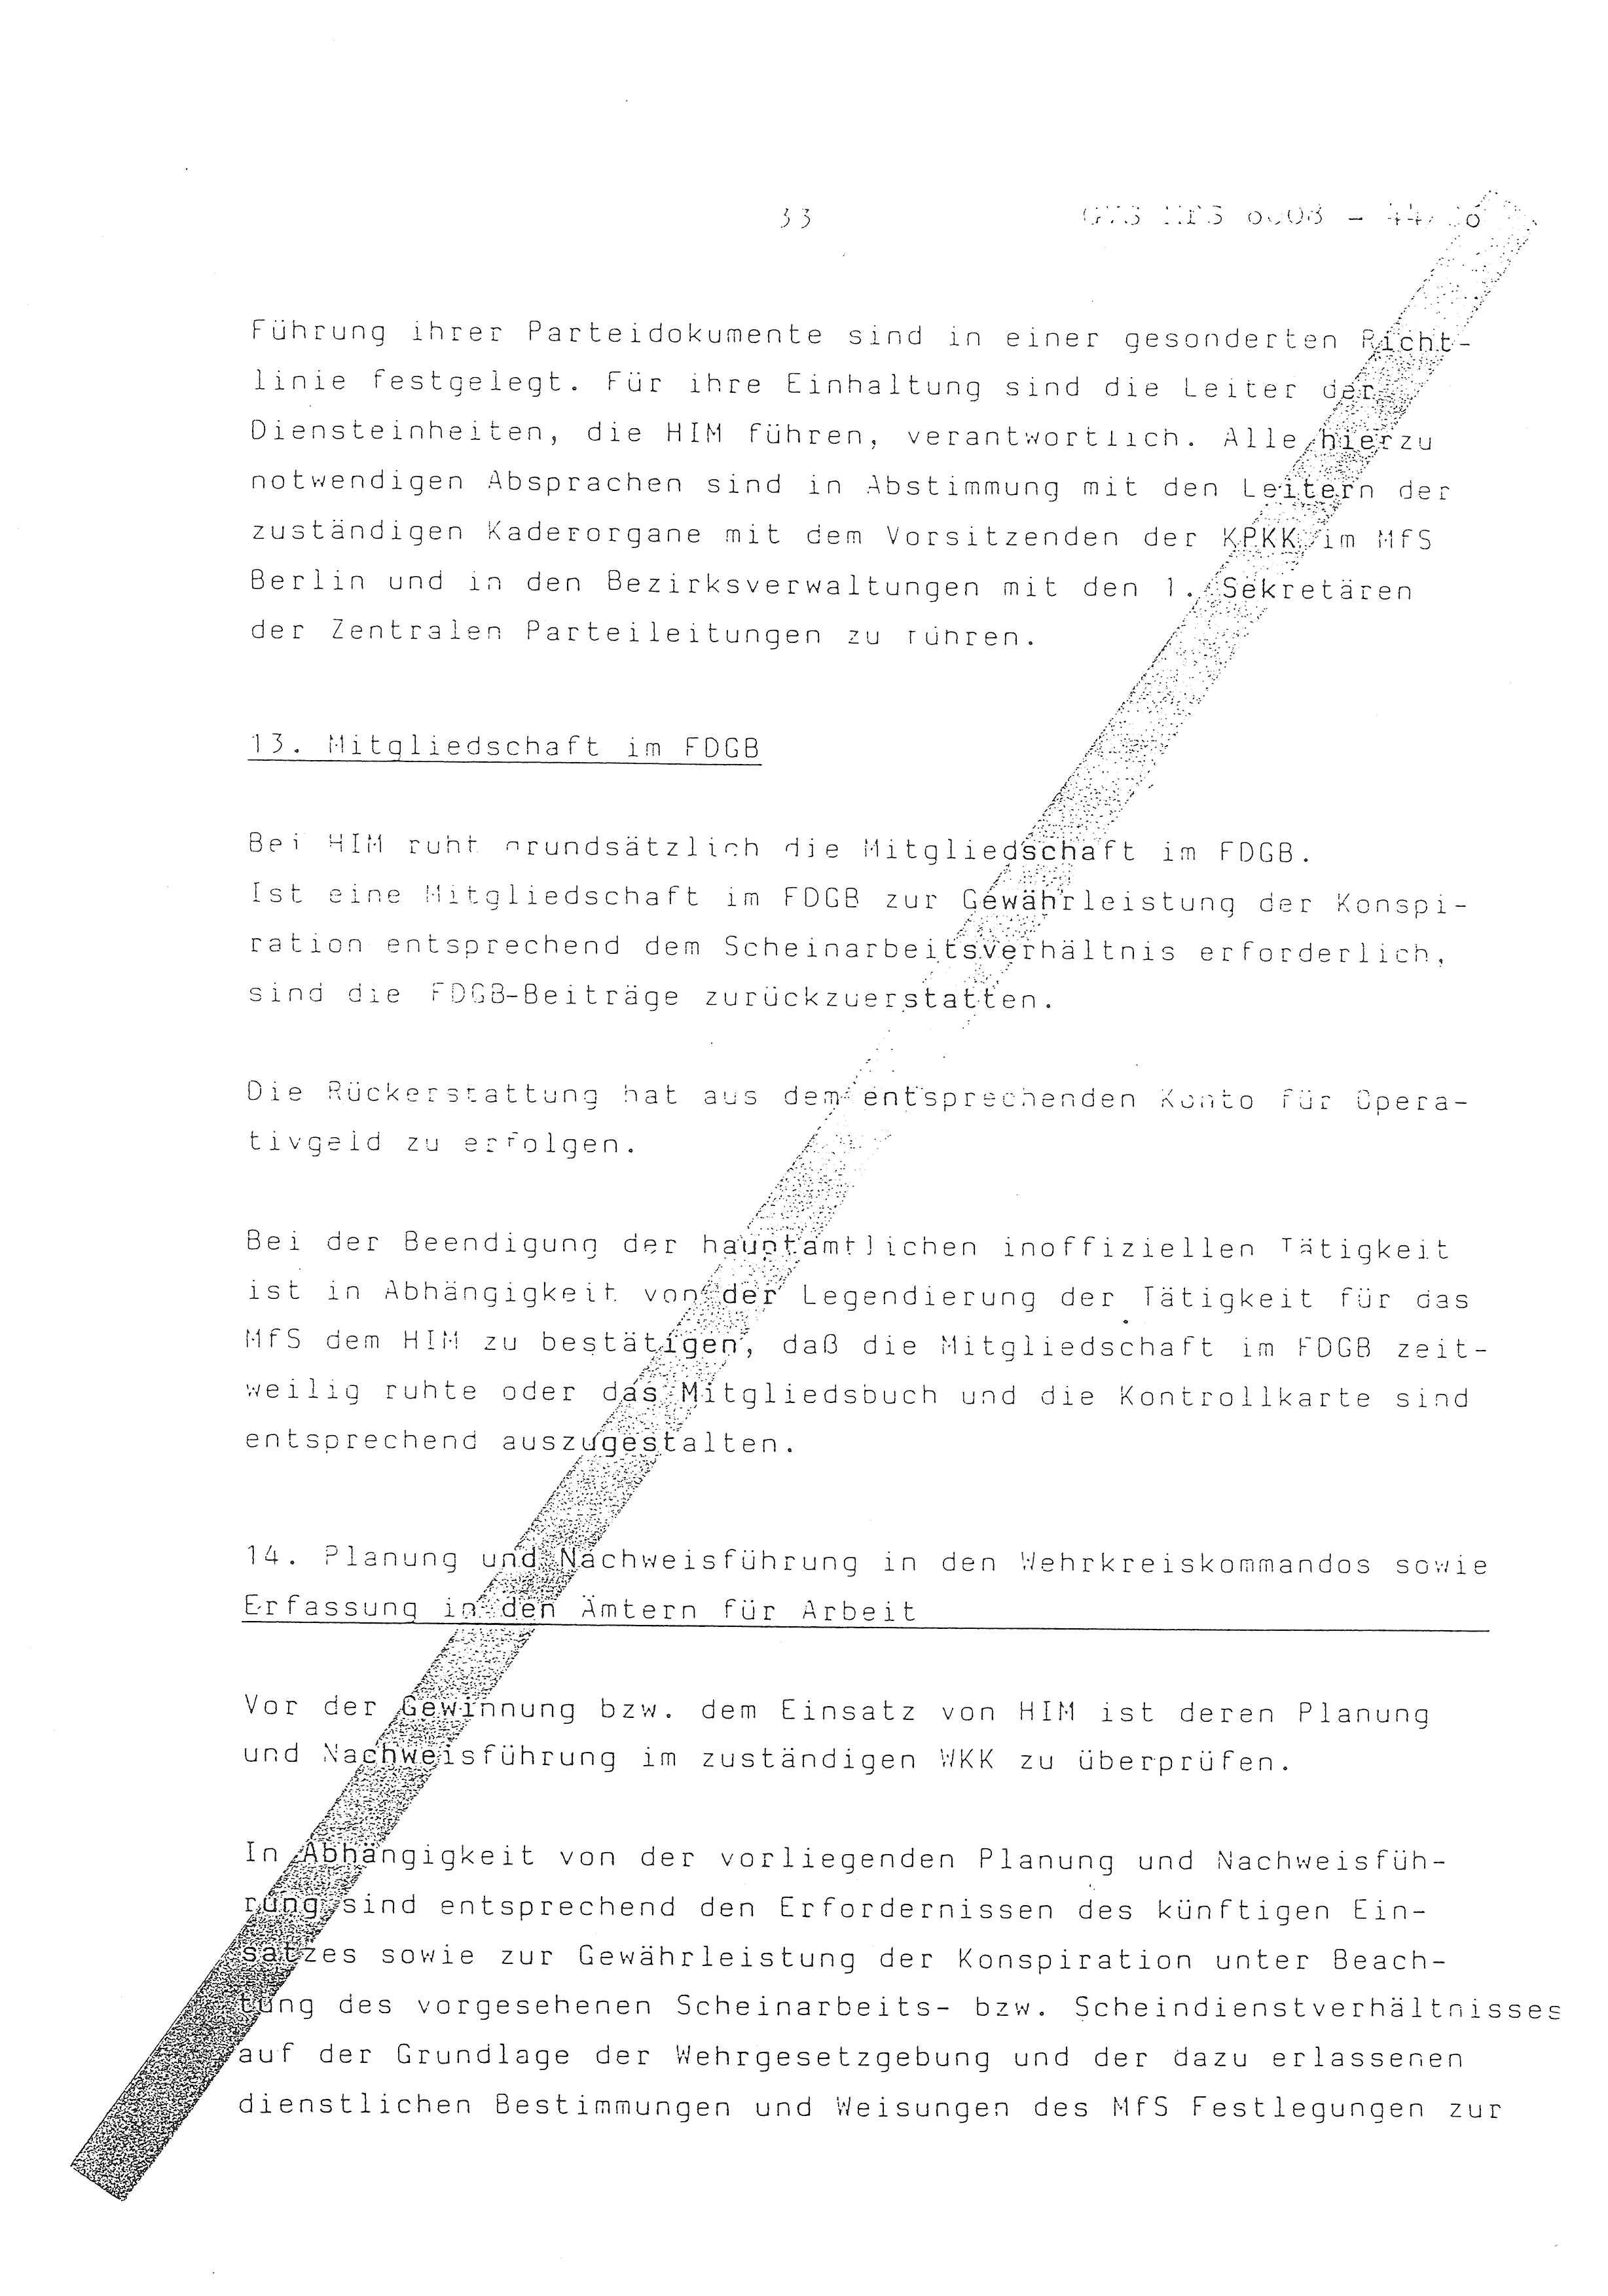 2. Durchführungsbestimmung zur Richtlinie 1/79 über die Arbeit mit hauptamtlichen Mitarbeitern des MfS (HIM), Deutsche Demokratische Republik (DDR), Ministerium für Staatssicherheit (MfS), Der Minister (Mielke), Geheime Verschlußsache (GVS) ooo8-44/86, Berlin 1986, Seite 33 (2. DB RL 1/79 DDR MfS Min. GVS ooo8-44/86 1986, S. 33)